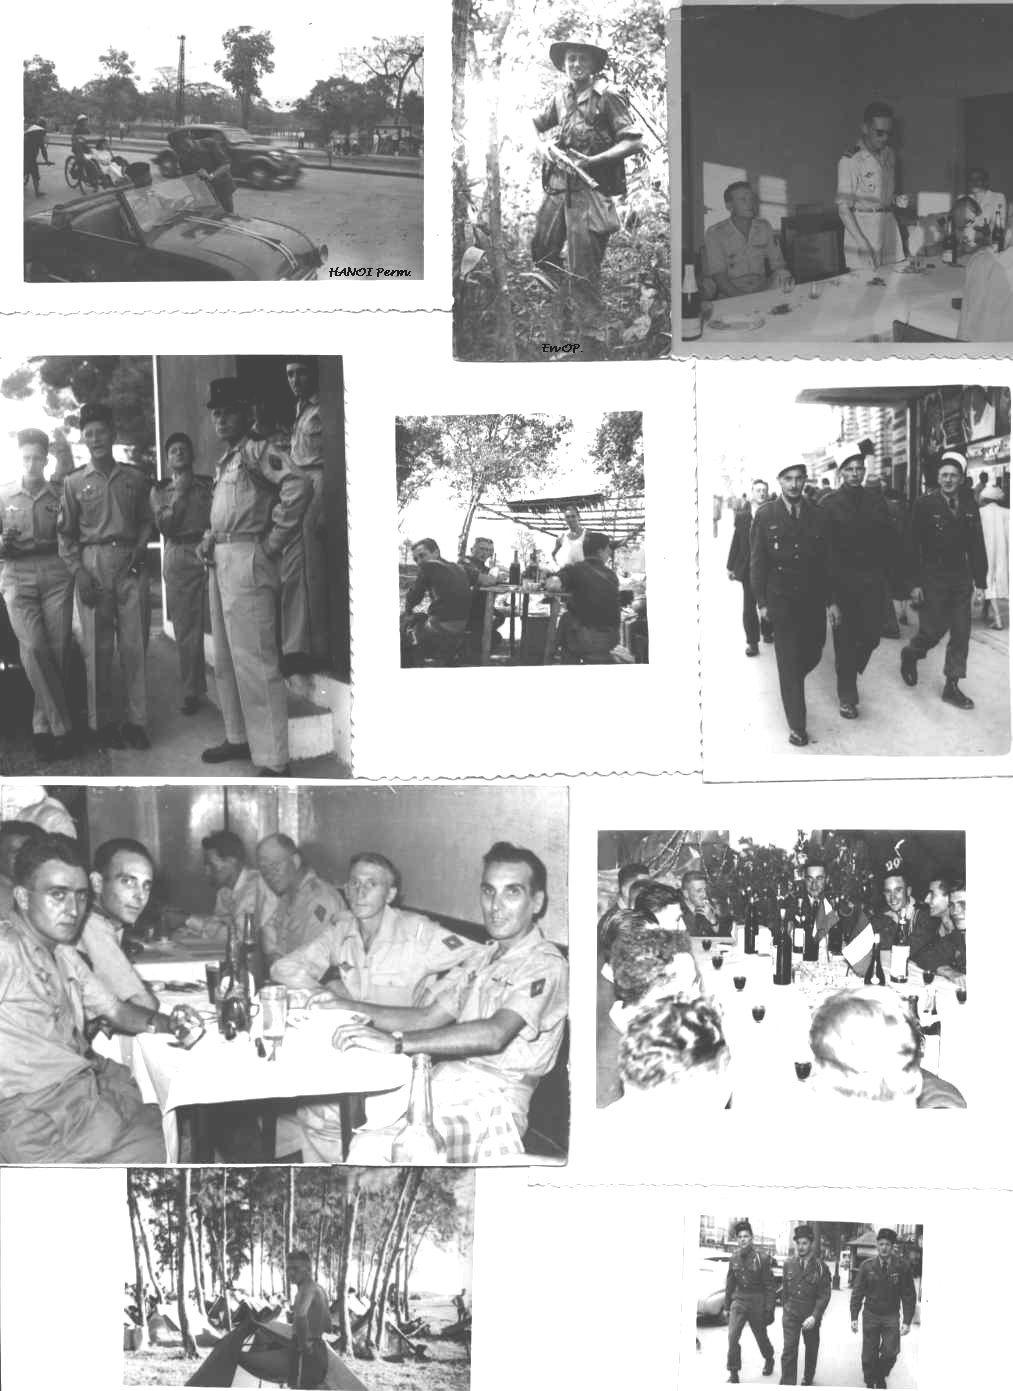 LEMAHIEU S/LNT 1er REP mort au combat le le 26-12-1959 à MARAGNA Douar Malou Kabylie en Algérie française R1ri